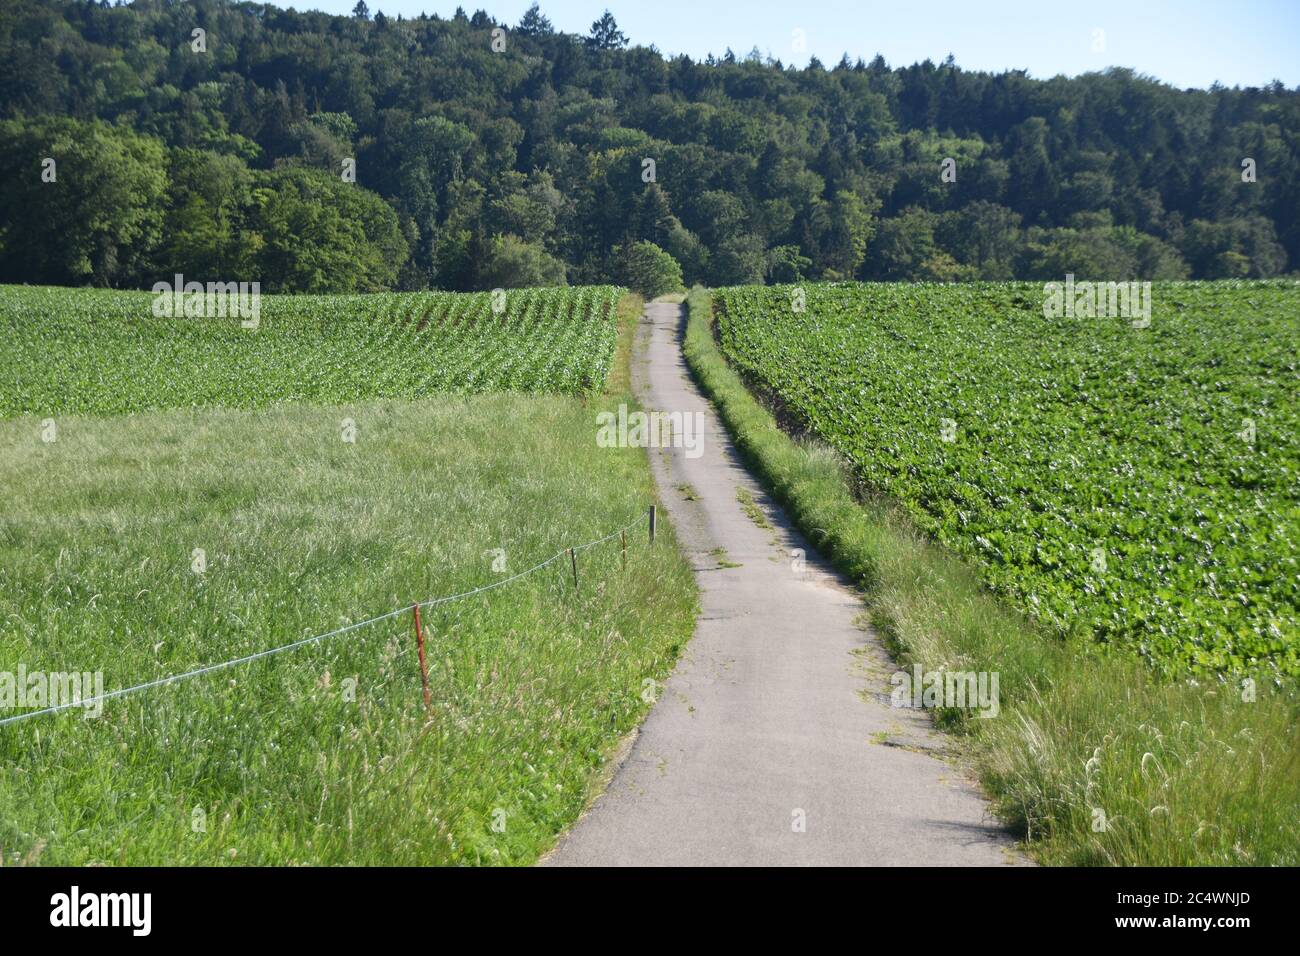 Vide piste cyclable ou piste cyclable dans la campagne suisse en temps de verrouillage en raison du virus Corona, Covid-19 entre deux champs verts pendant la journée ensoleillée Banque D'Images